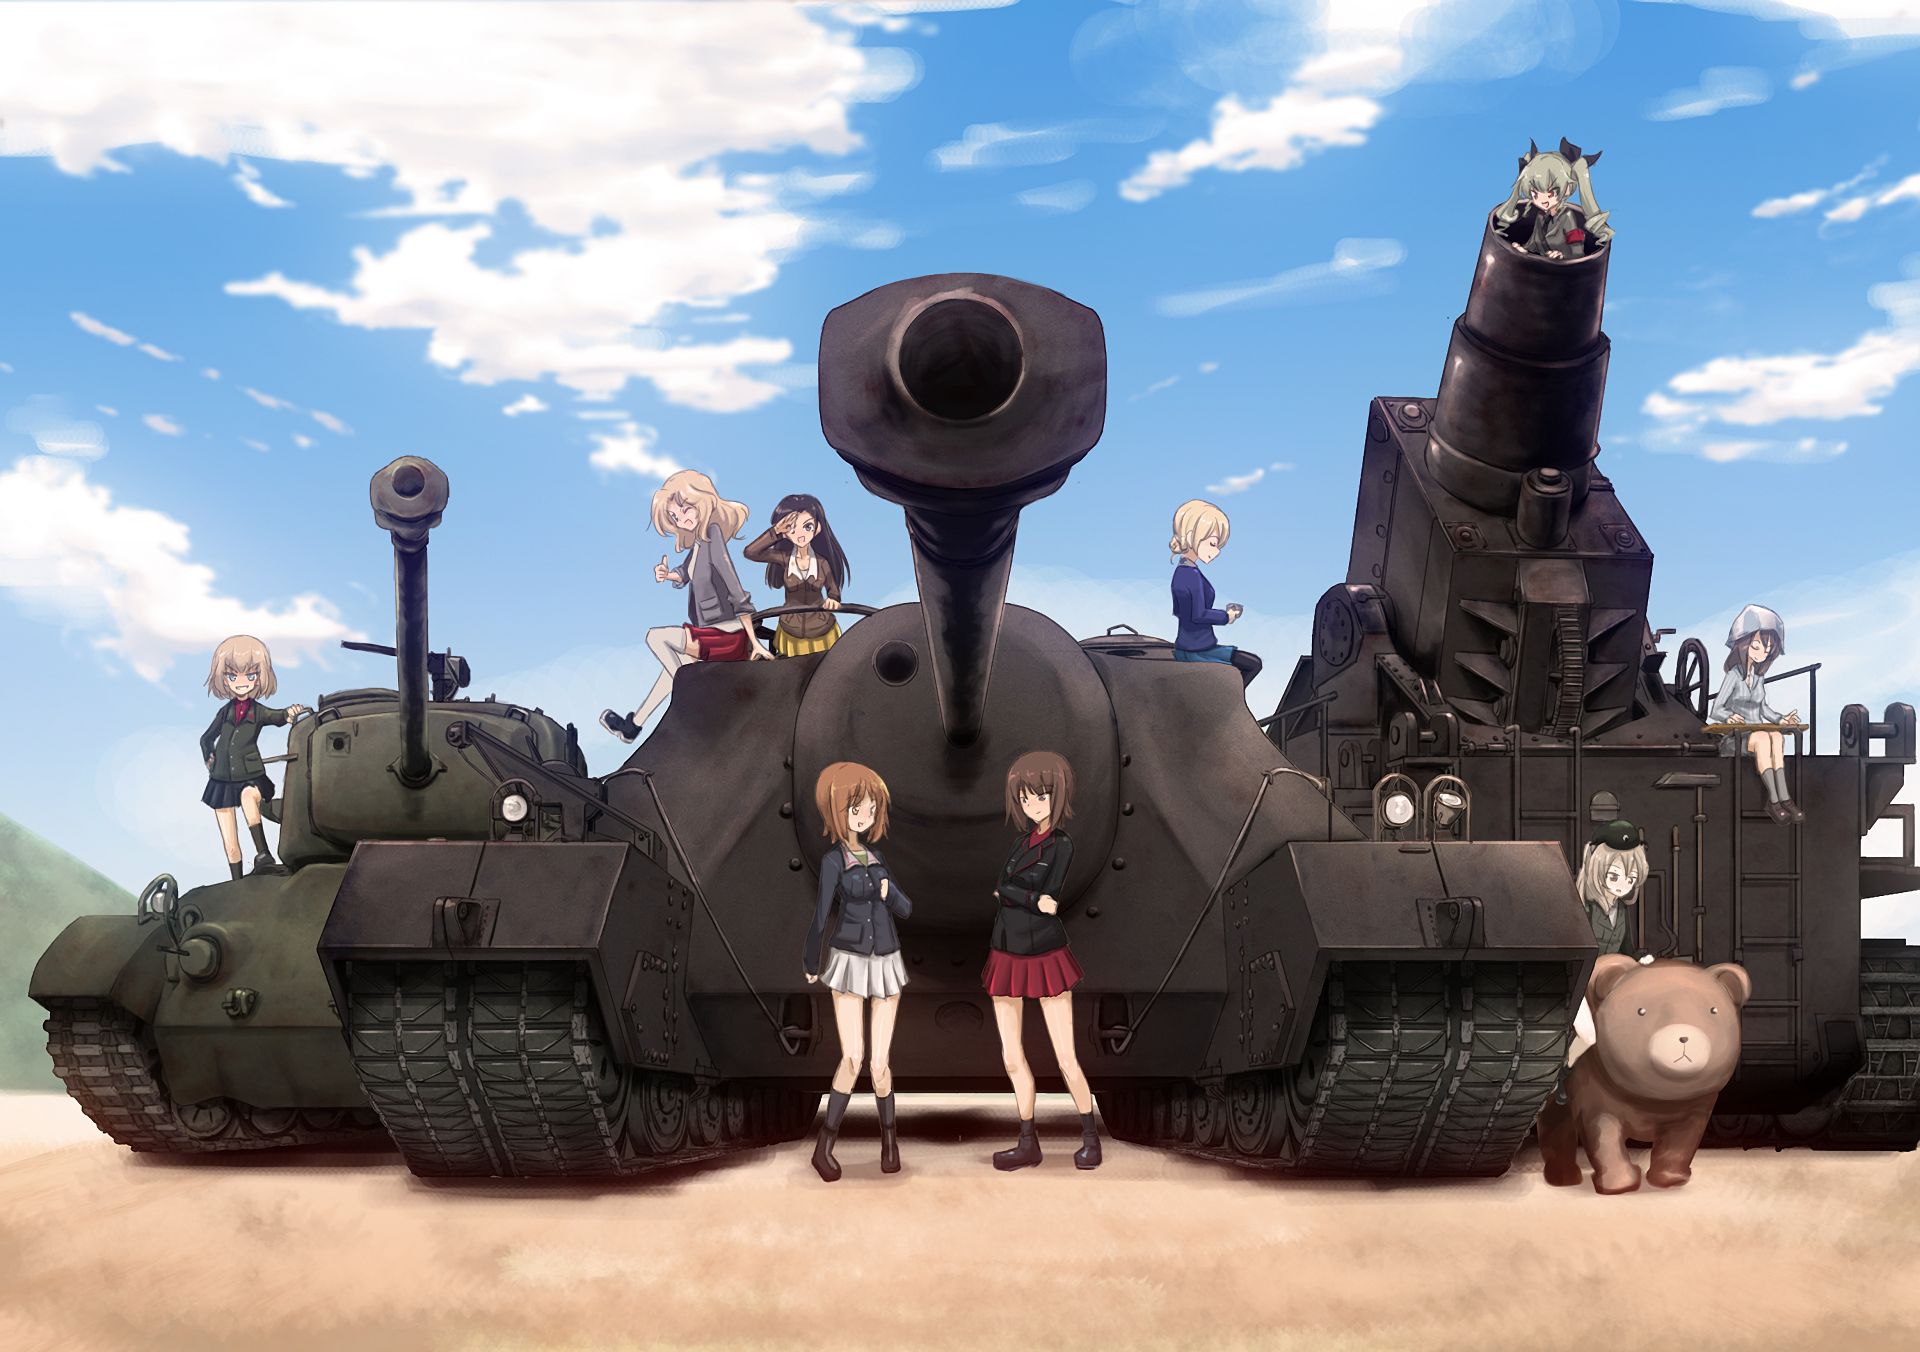 Baixar papel de parede para celular de Anime, Girls Und Panzer gratuito.